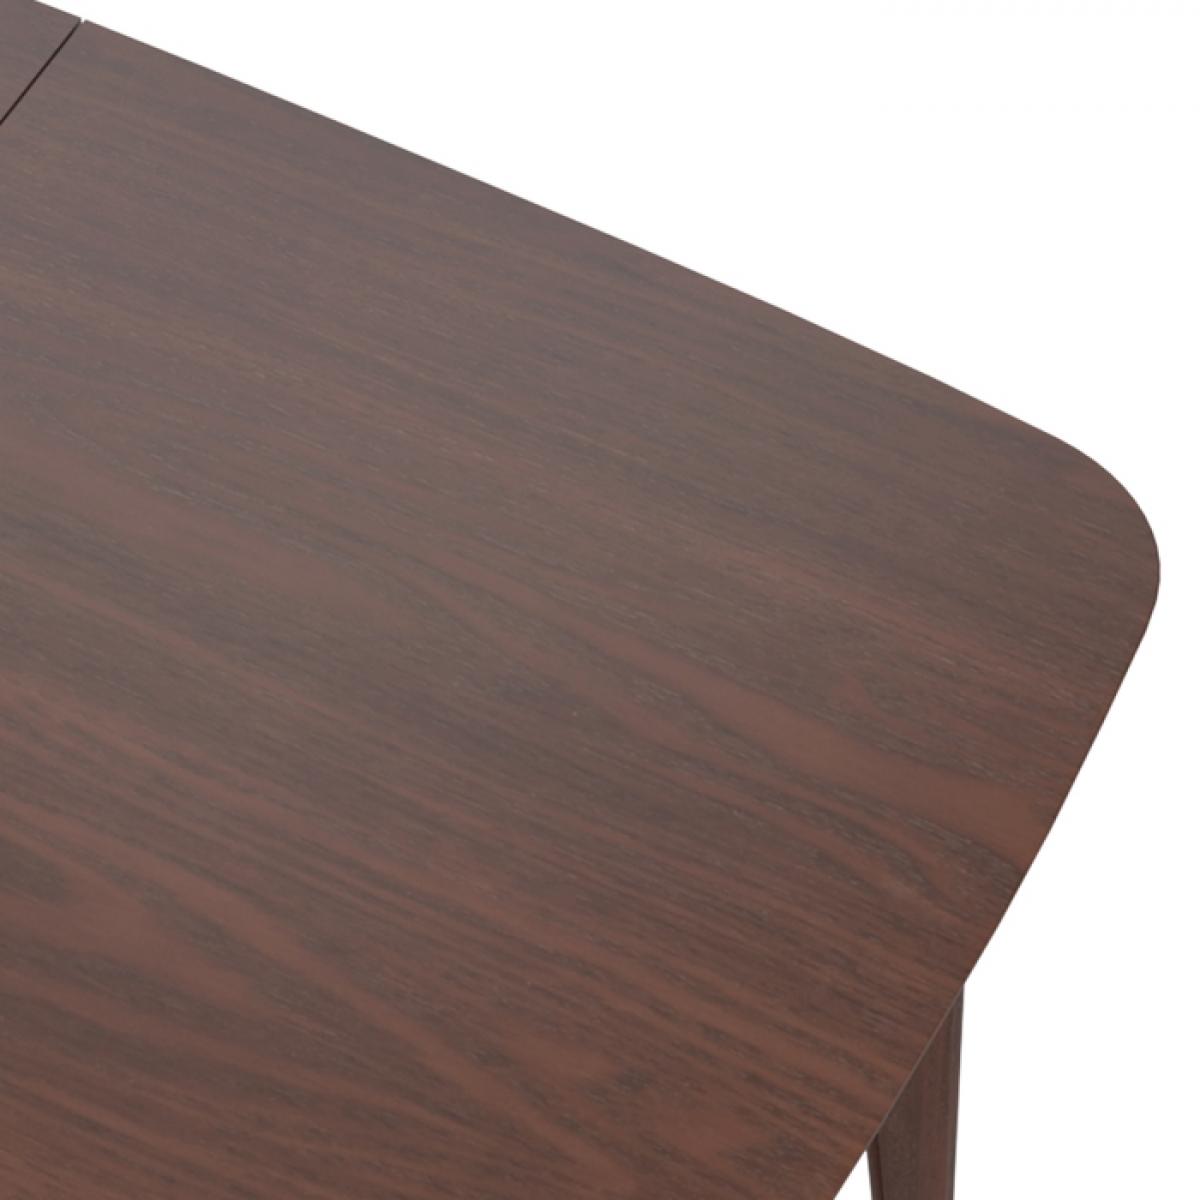 Table rectangulaire Oman 6/8 personnes extensible en bois foncé 150/180 cm